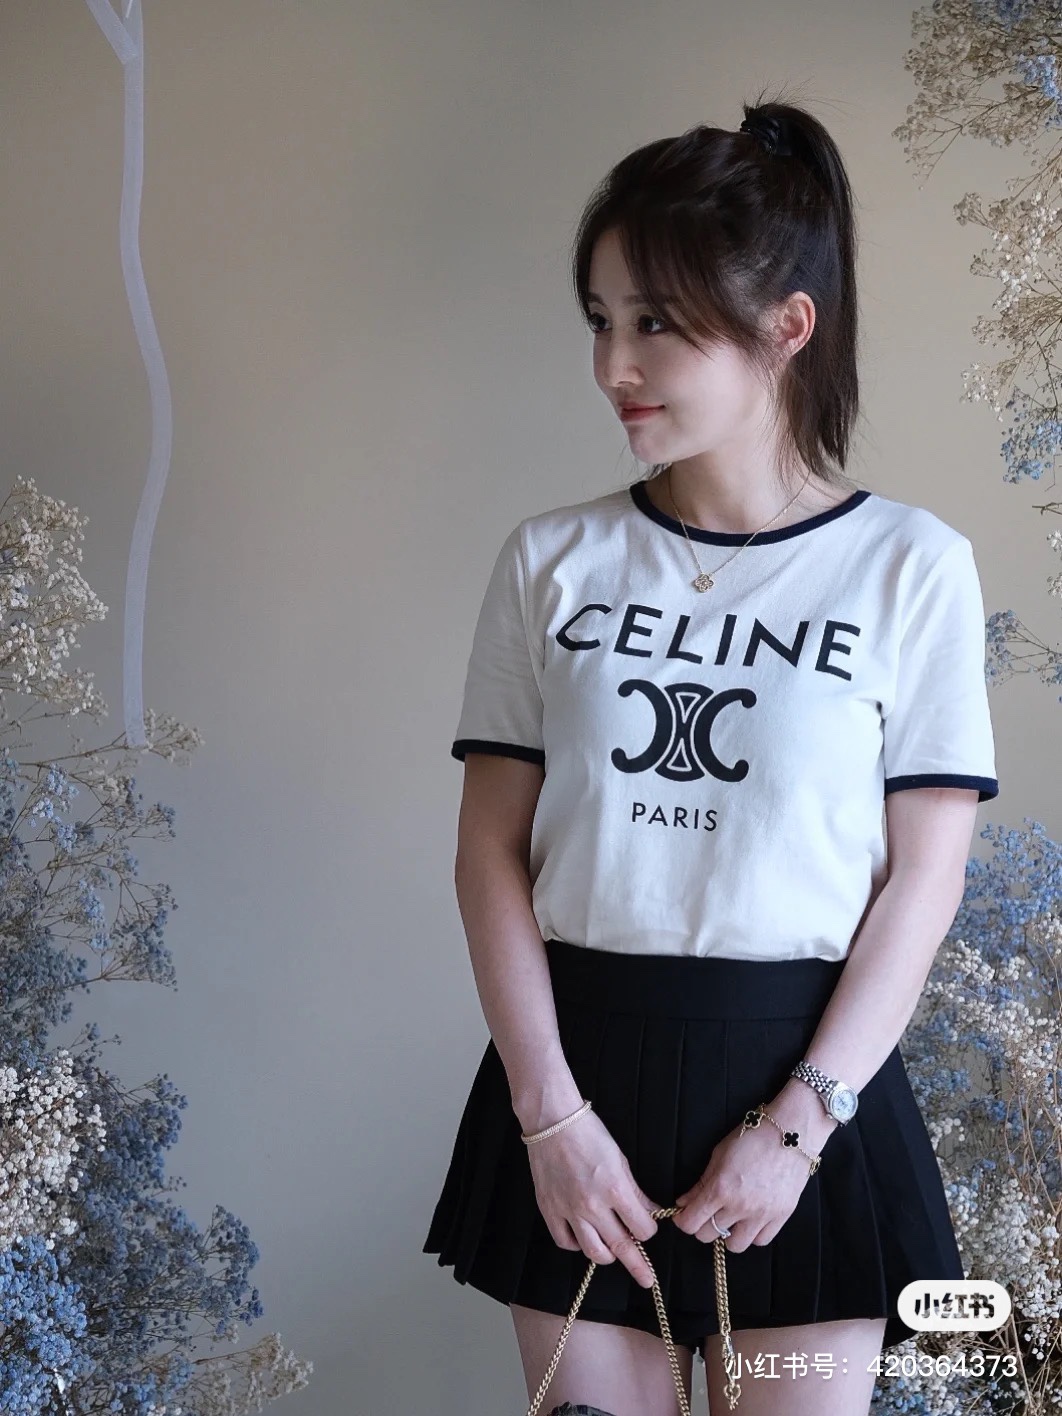  法国时尚品牌Celine，在潮流变迁中历久弥新，创立人薇琵娜女士把Celine从包袋到服饰，都在时尚圈占据了一席之地。Celine在不断的探索中前进，设计出很多的经典图案让人铭记于心，24新款女士T恤上的Chain Blason (双C锁链图案)便是其中之一，秦岚最新上身，简约合身的版型，领口和袖口带着镶边配色，唯美的复古感油然而生，整体效果还十分俏皮减龄，果然薇琵娜的Celine更懂女人，胸口标志性CINE大字母非常显眼，下面便是凯旋门的双C锁链图案，搭配